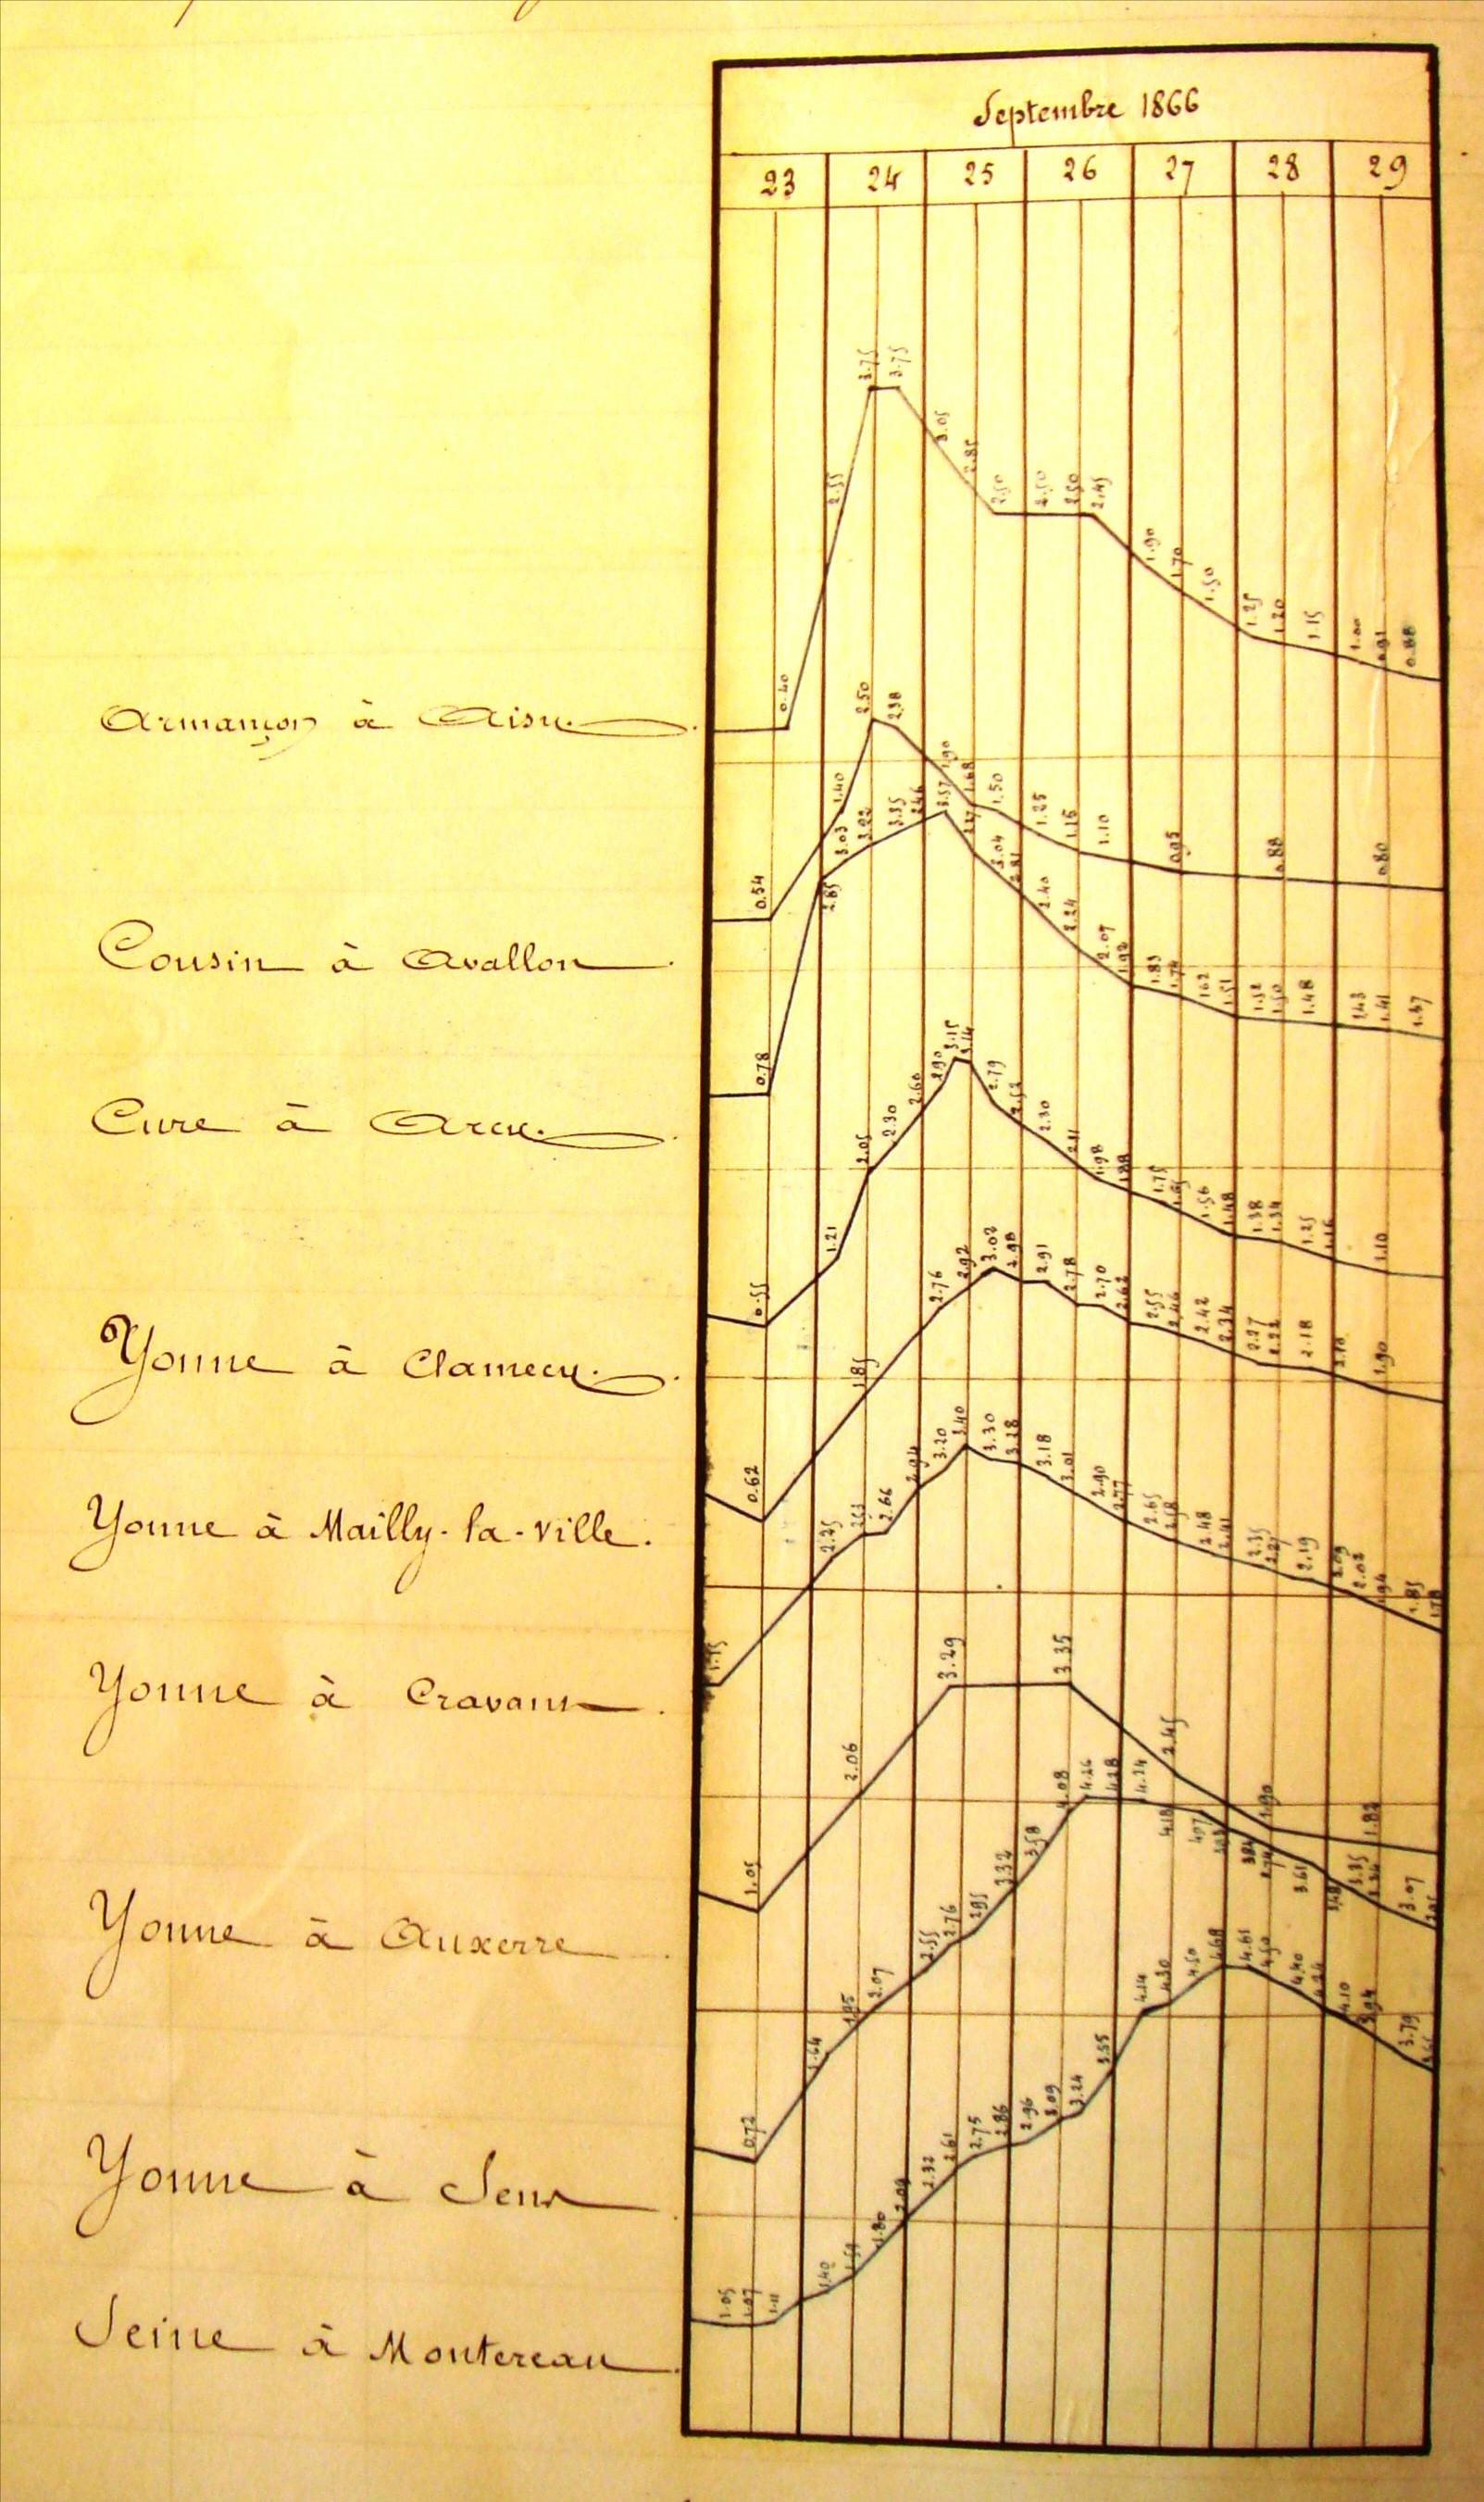 Relevés hydrométriques de l’Yonne et ses affluents lors de la crue de septembre 1866 (Etude sur le régime des eaux du bassin de la Seine pendant les crues du mois de septembre 1866, Belgrand et Lemoine, éd. Dunod, 1868).